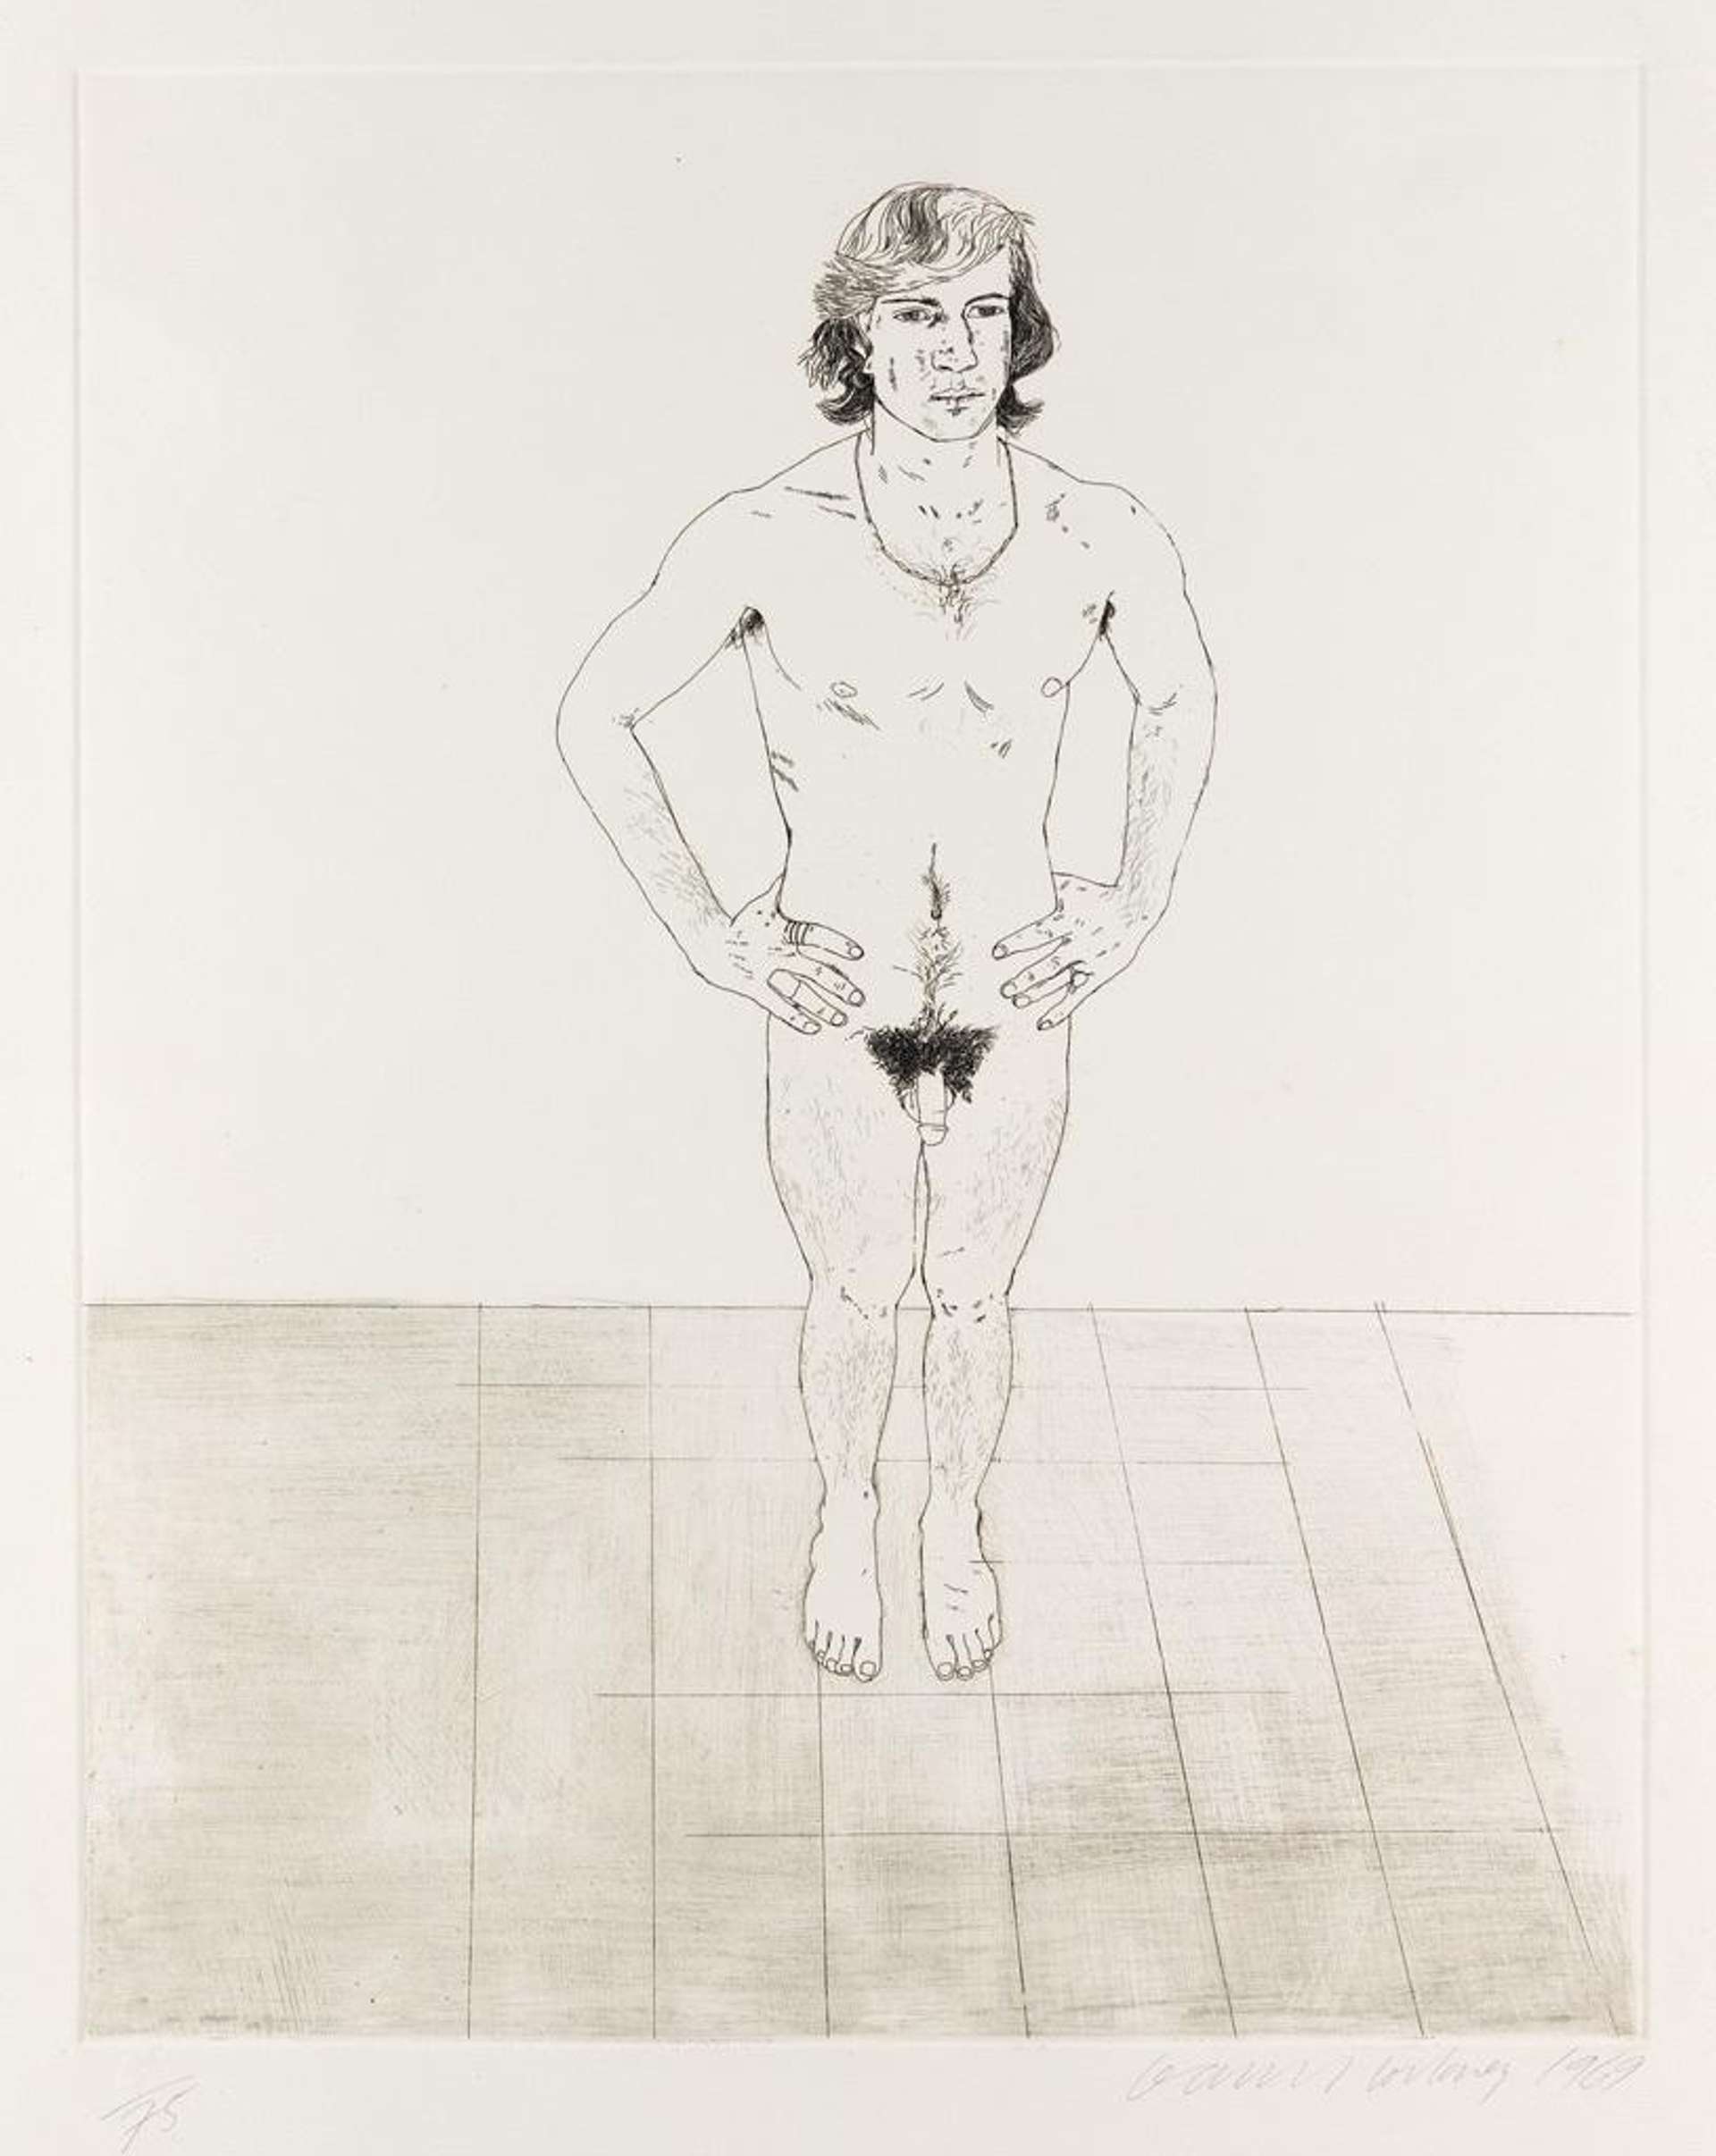 Peter - Signed Print by David Hockney 1969 - MyArtBroker